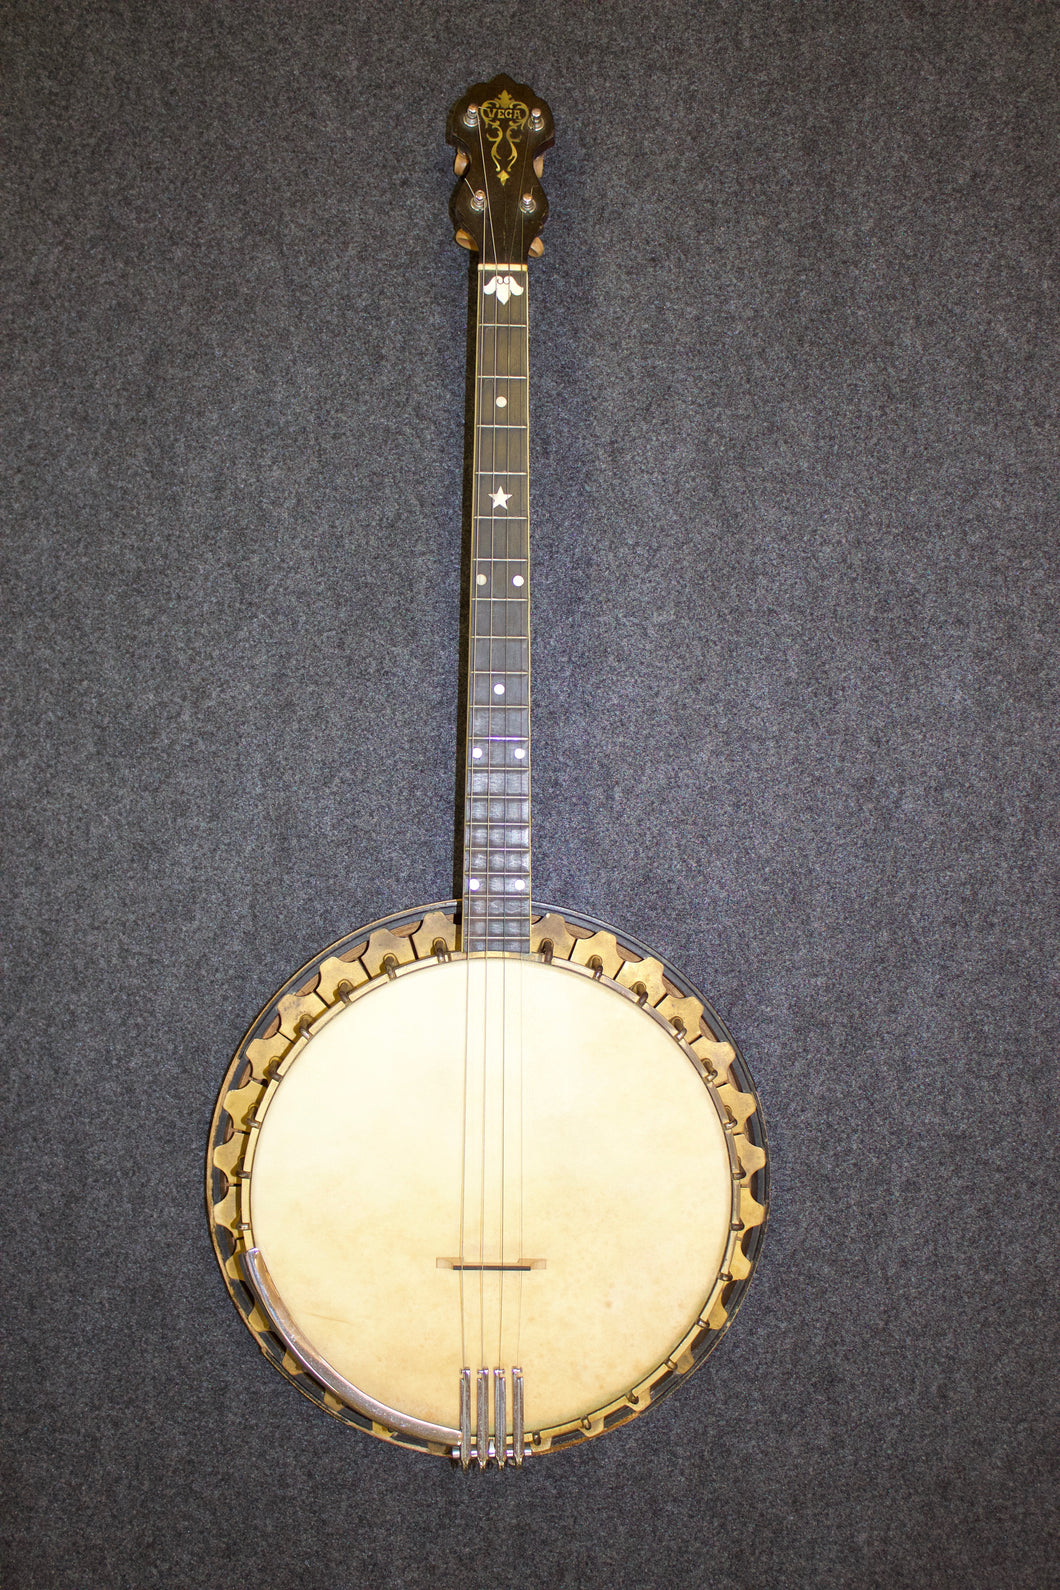 Vega Professional Tenor Banjo w/ custom Gold-plate hardware c. 1928